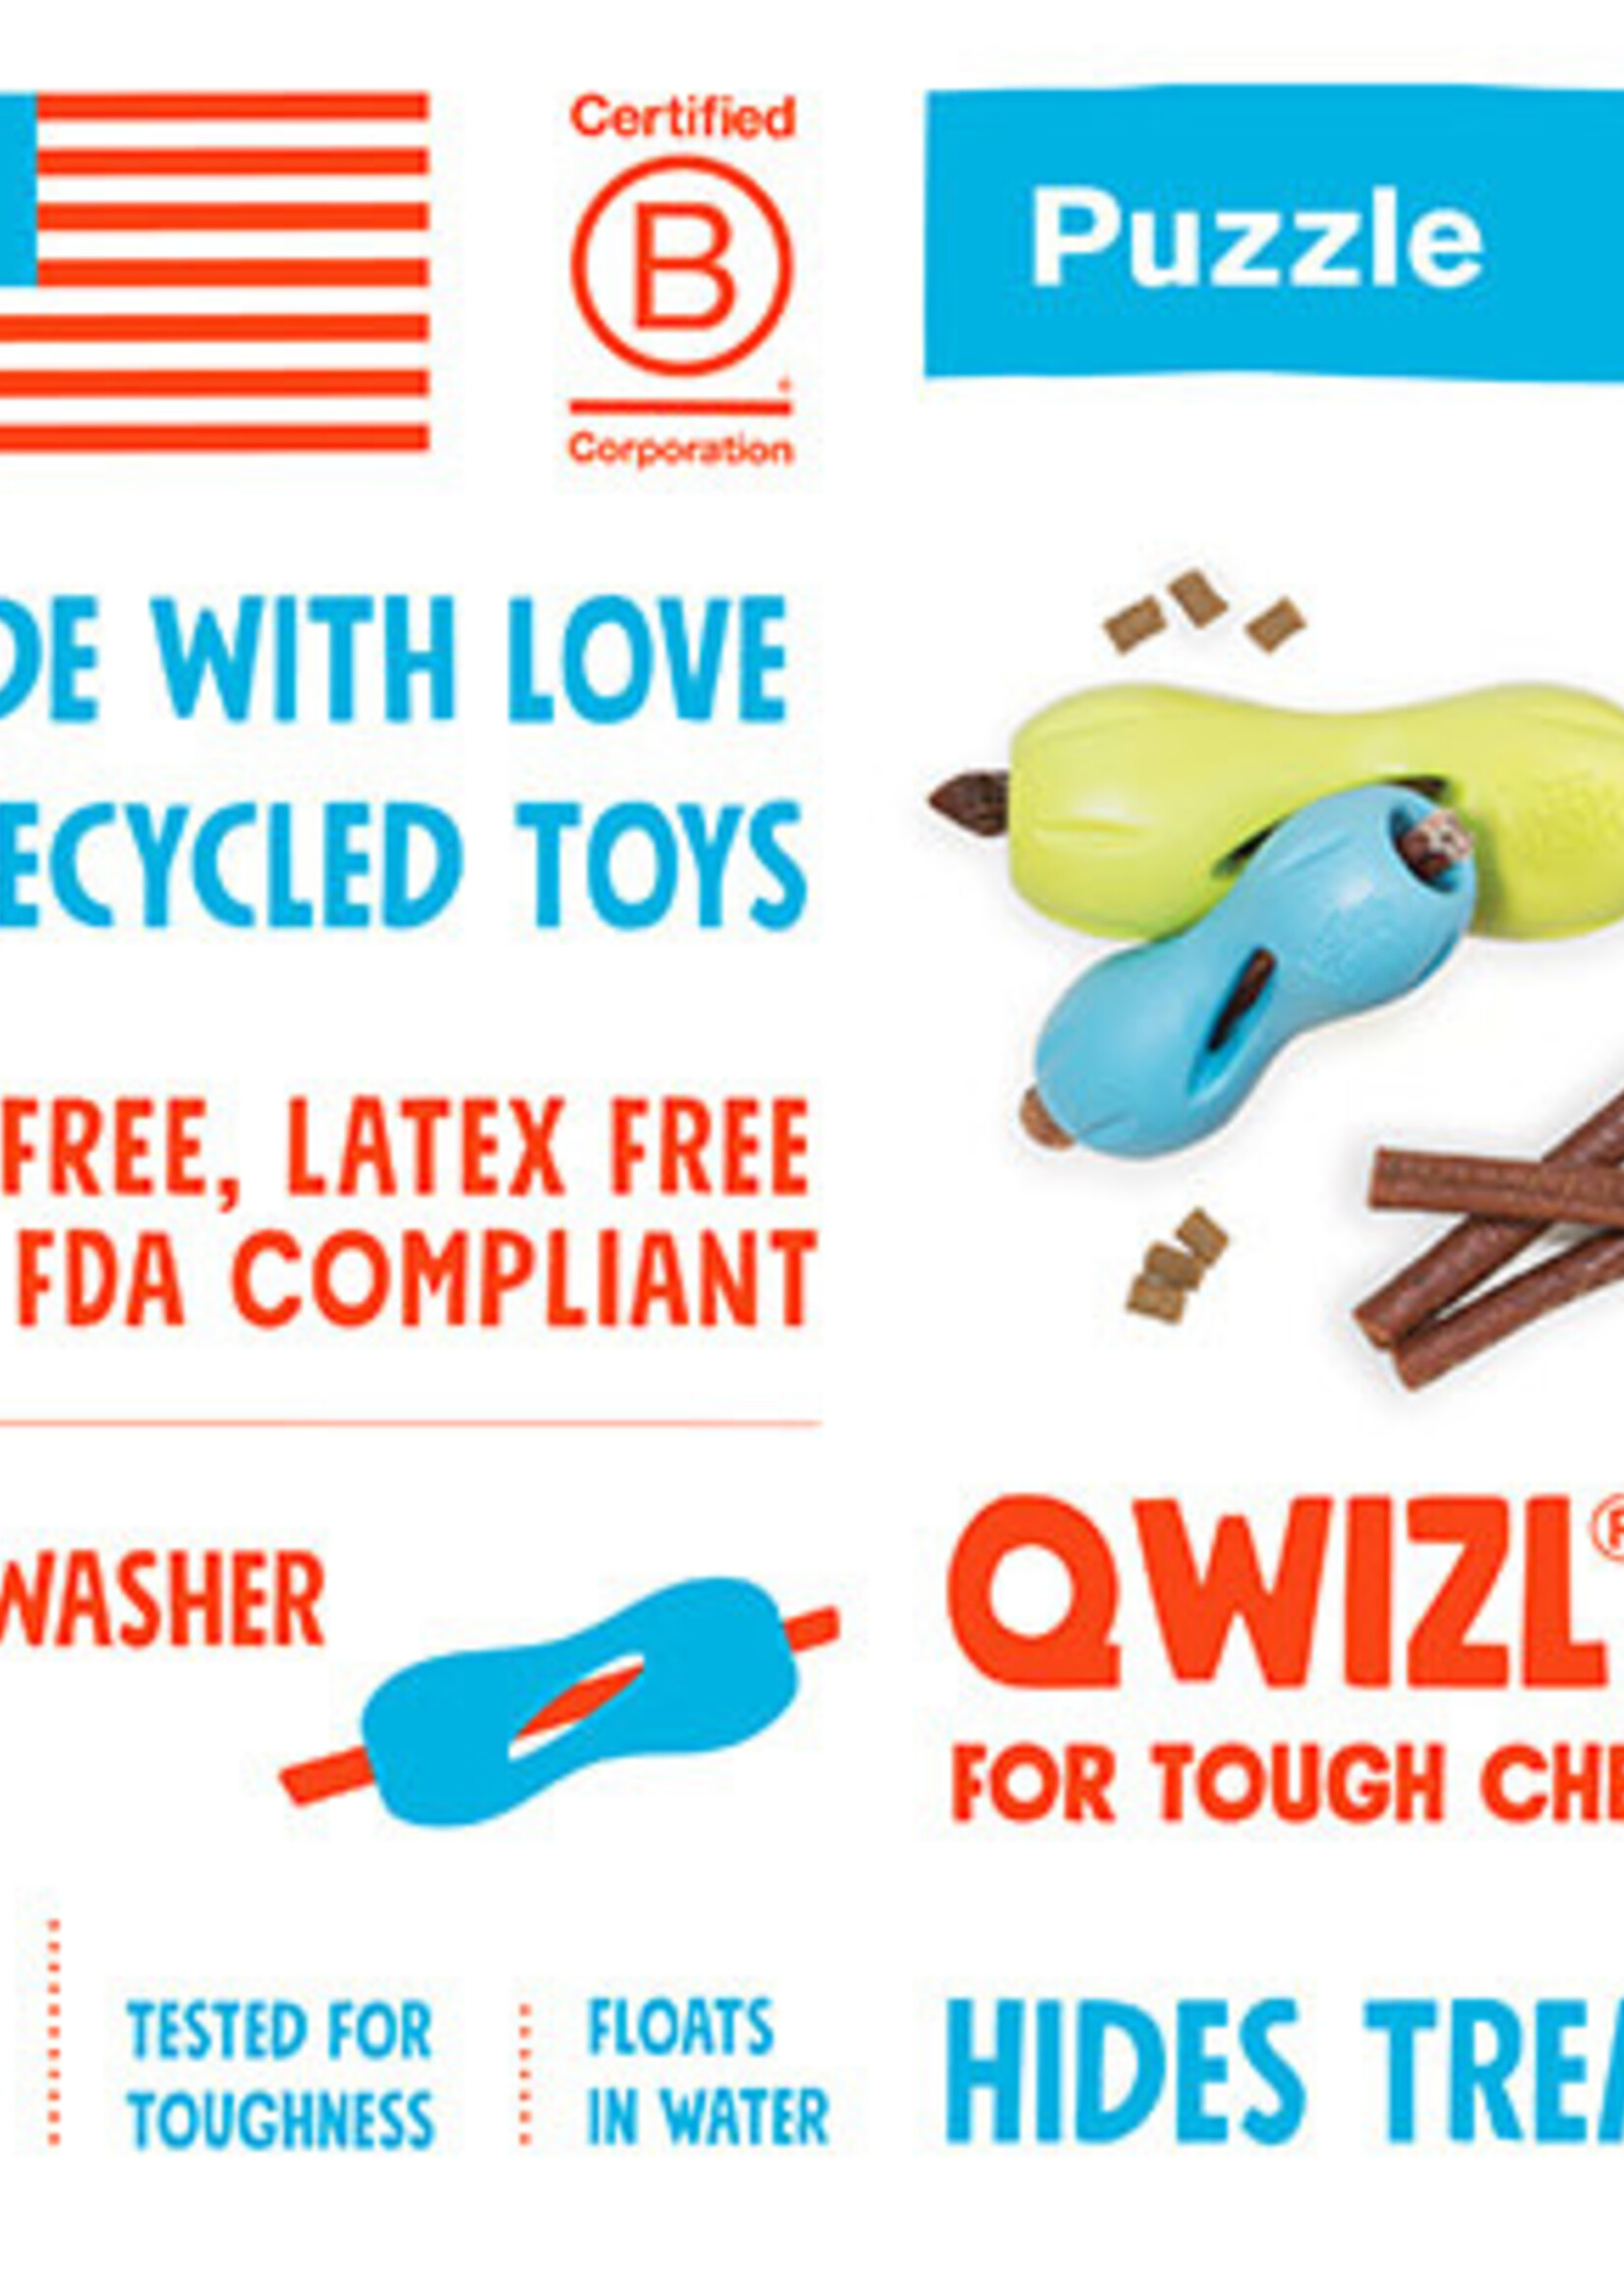 West Paw West Paw Qwizl Treat Dog Toy